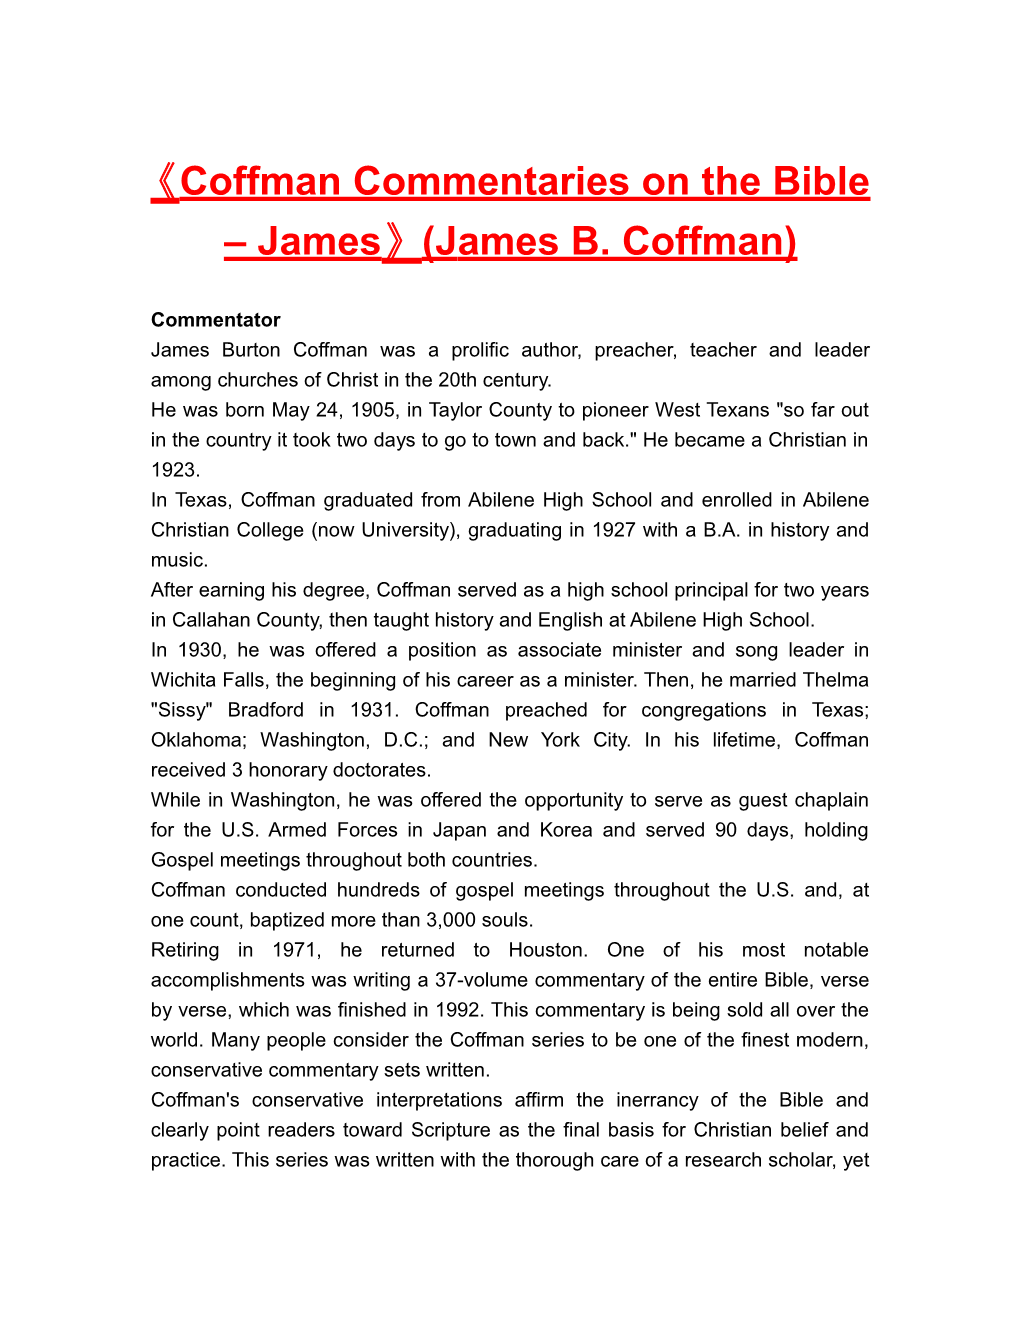 Coffman Commentaries on the Bible James (James B. Coffman)